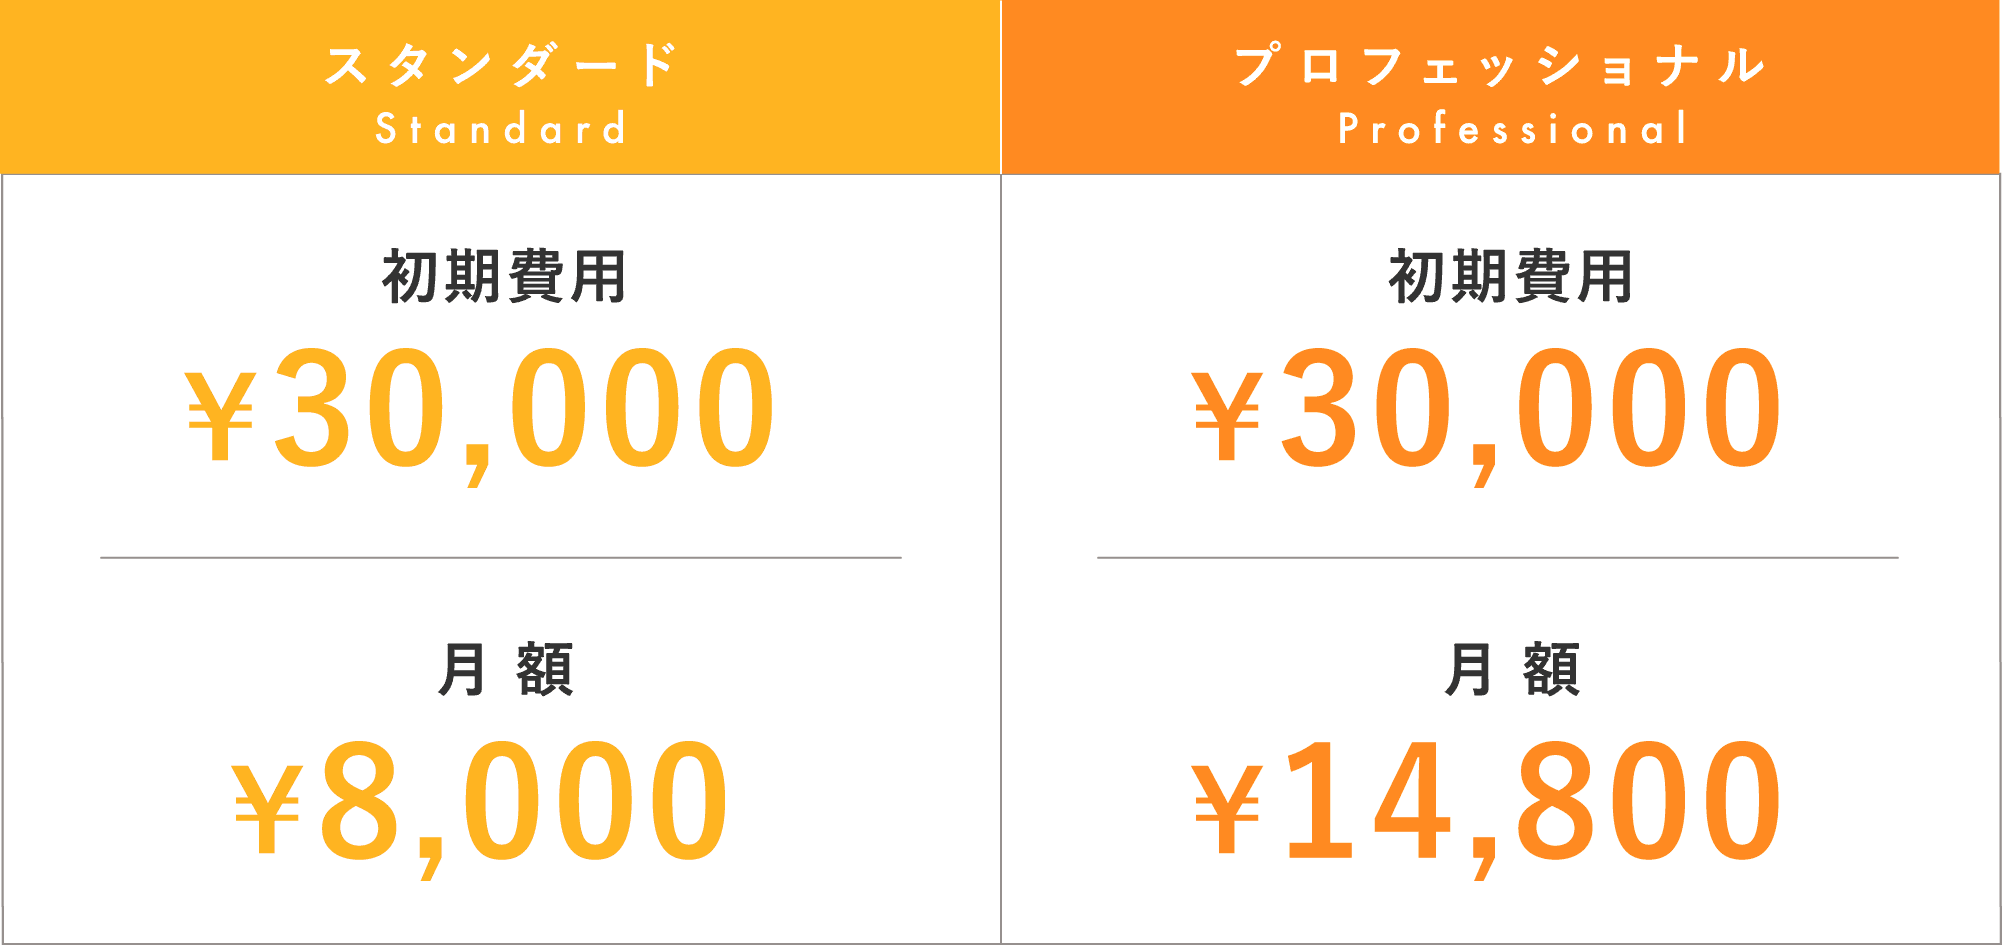 スタンダード 初期費用¥30,000 月額¥8,000 プロフェッショナル 初期費用¥30,000 月額¥14,800